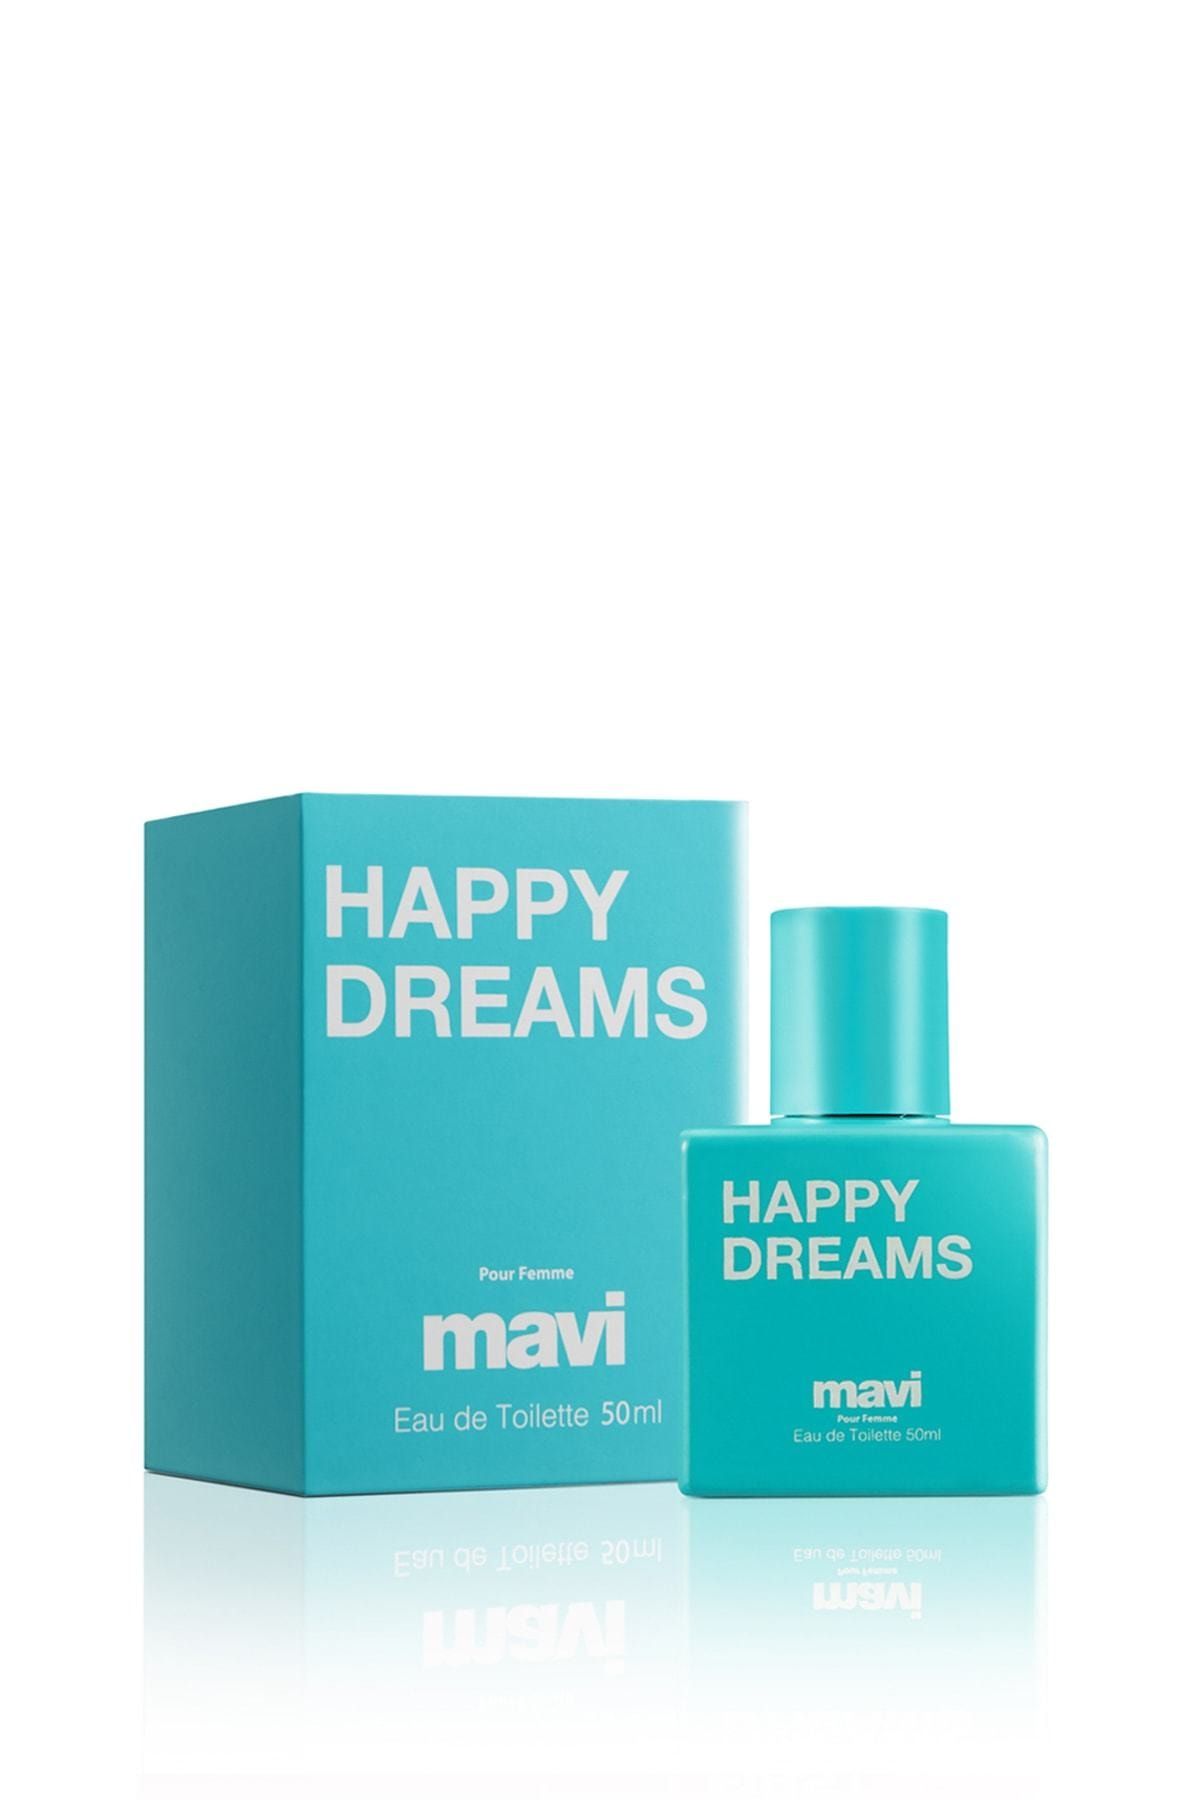 عطر Happy Dreams هپی دریمز زنانه 50 میل ماوی Mavi (برند ترکیه)